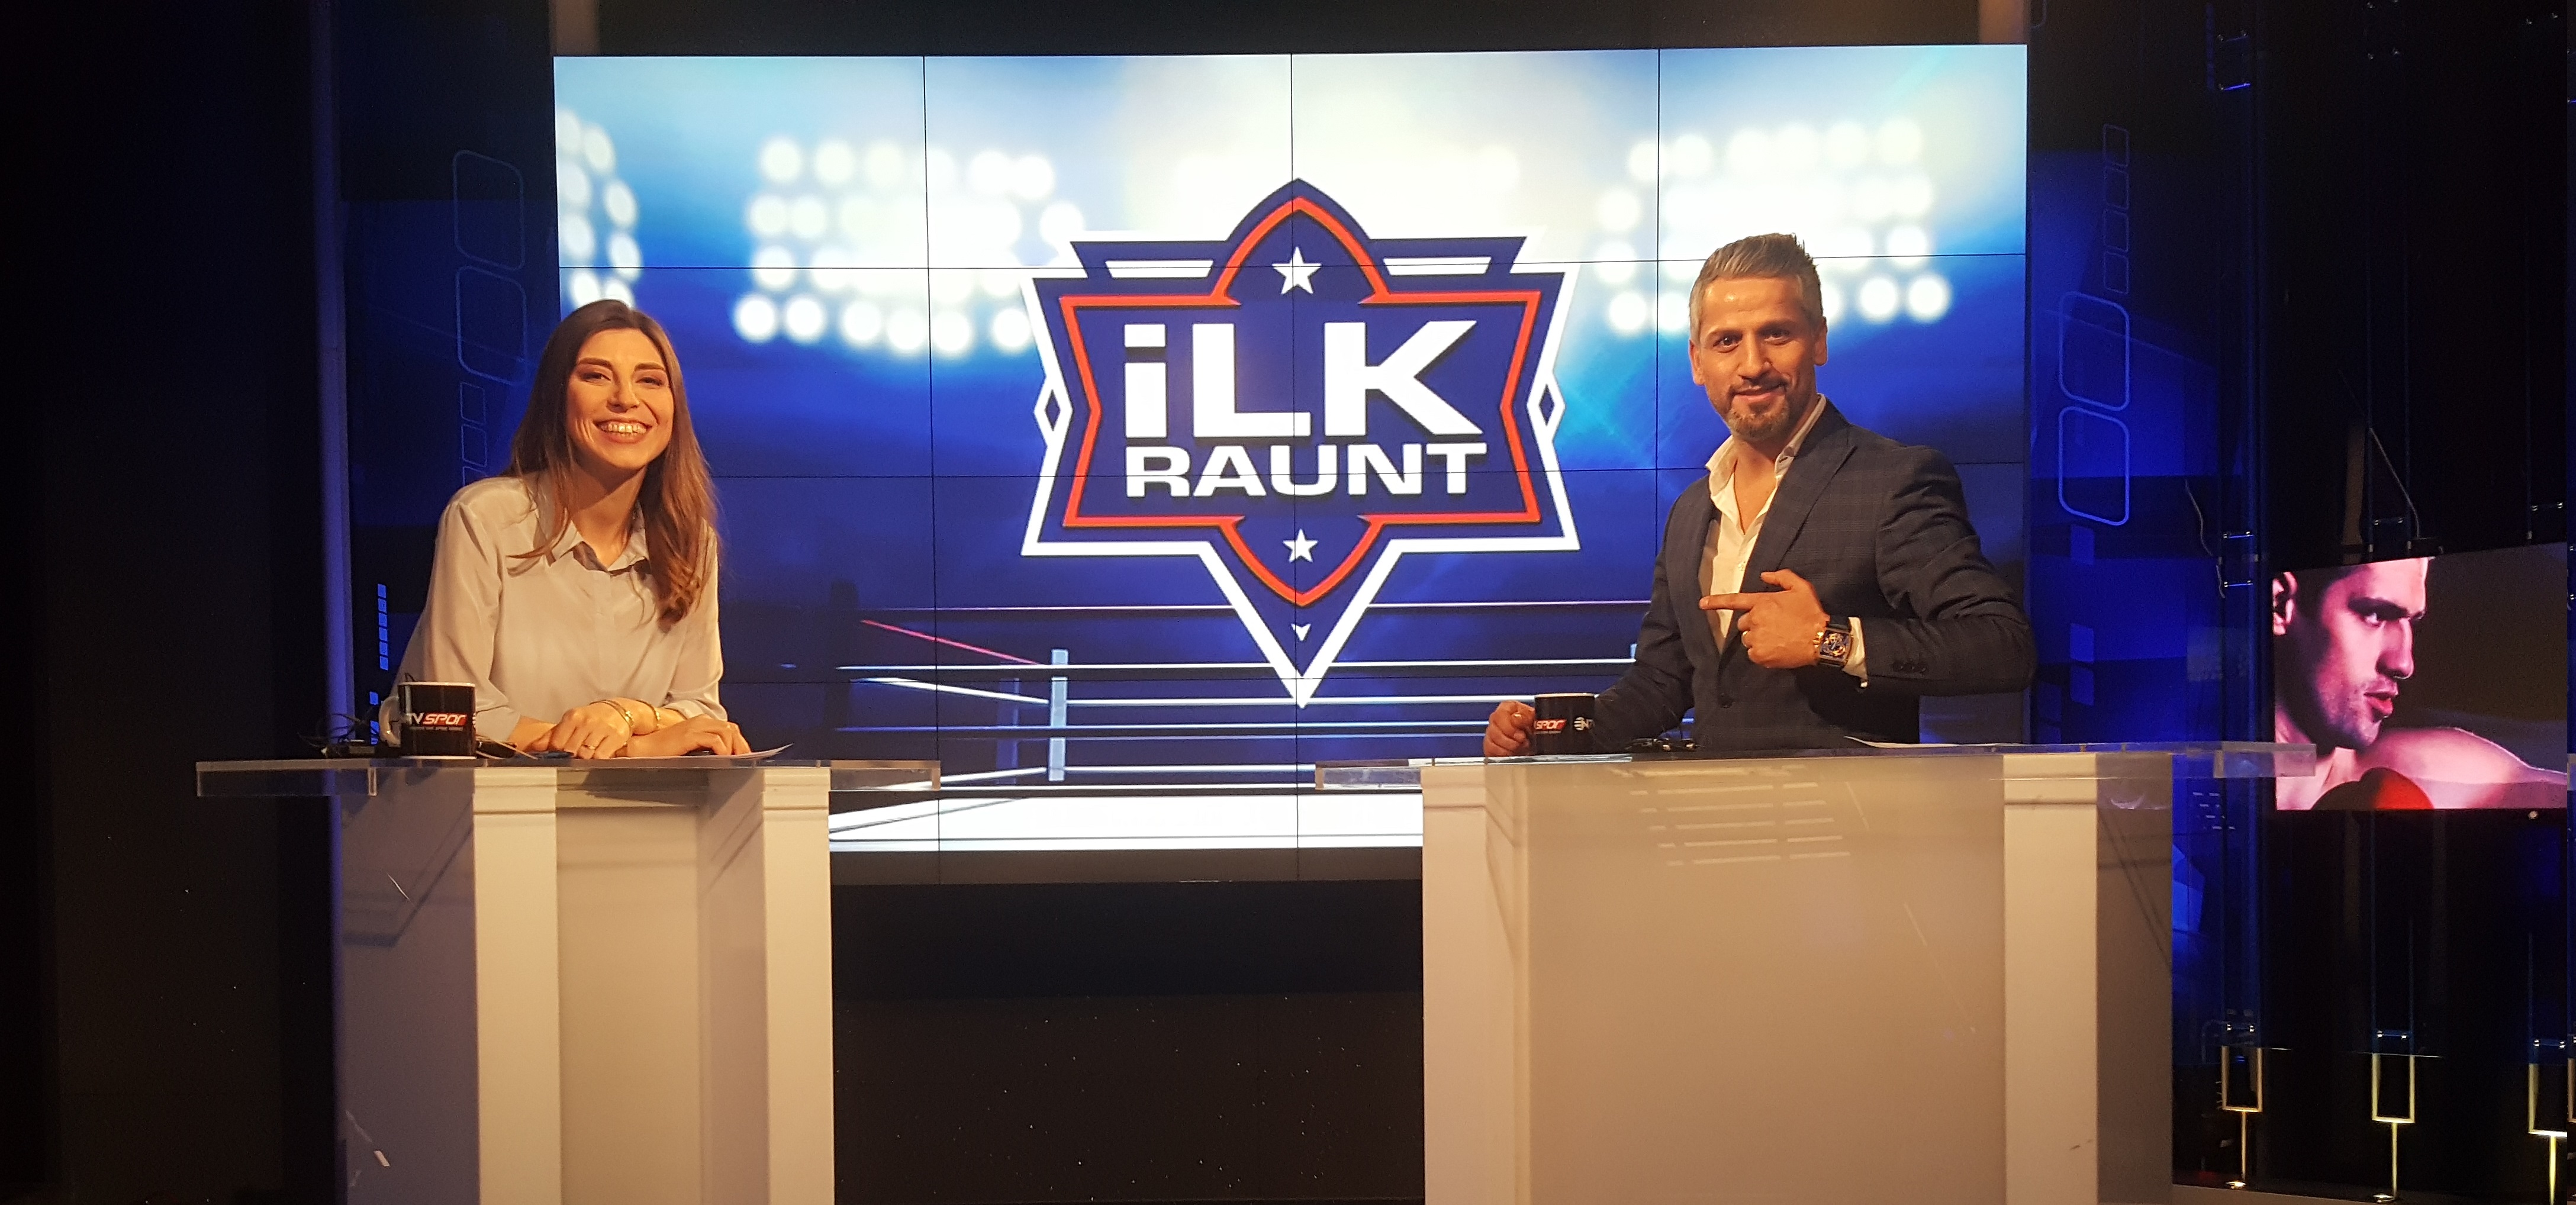 İlk Raunt Programı Bu Akşam NTV Spor'da Başlıyor